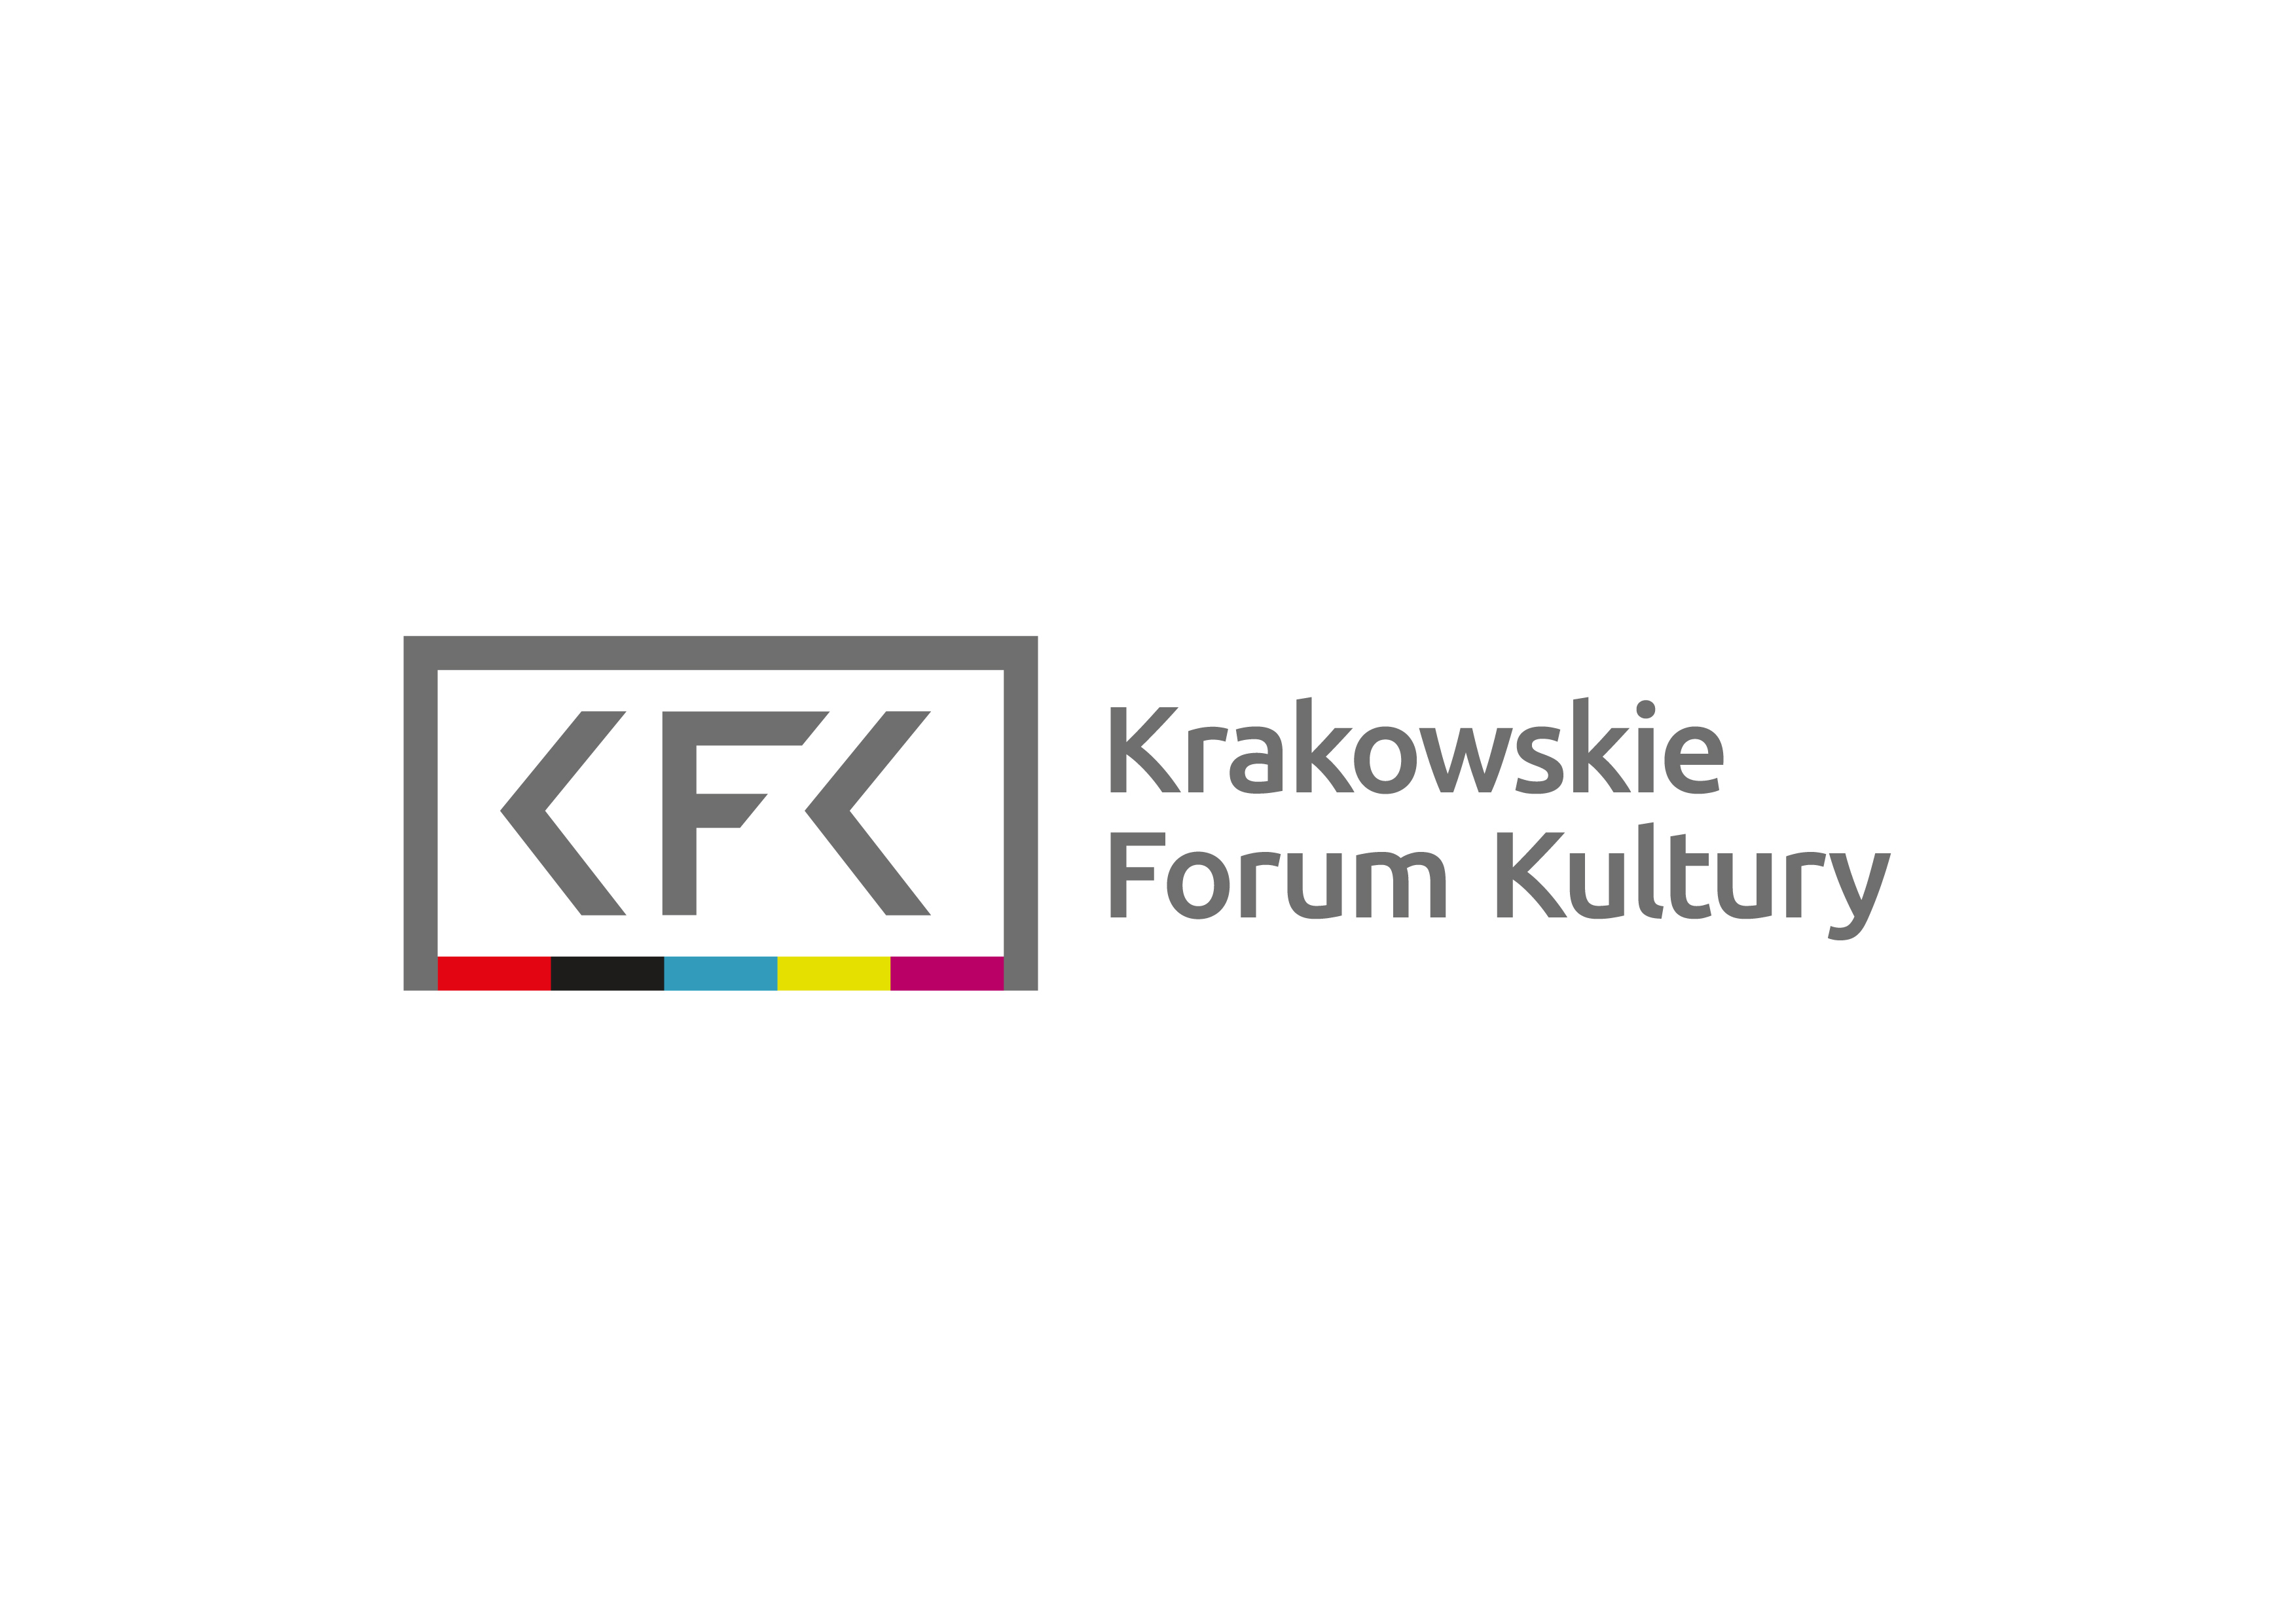 KFK_logo_ok.jpg (187 KB)